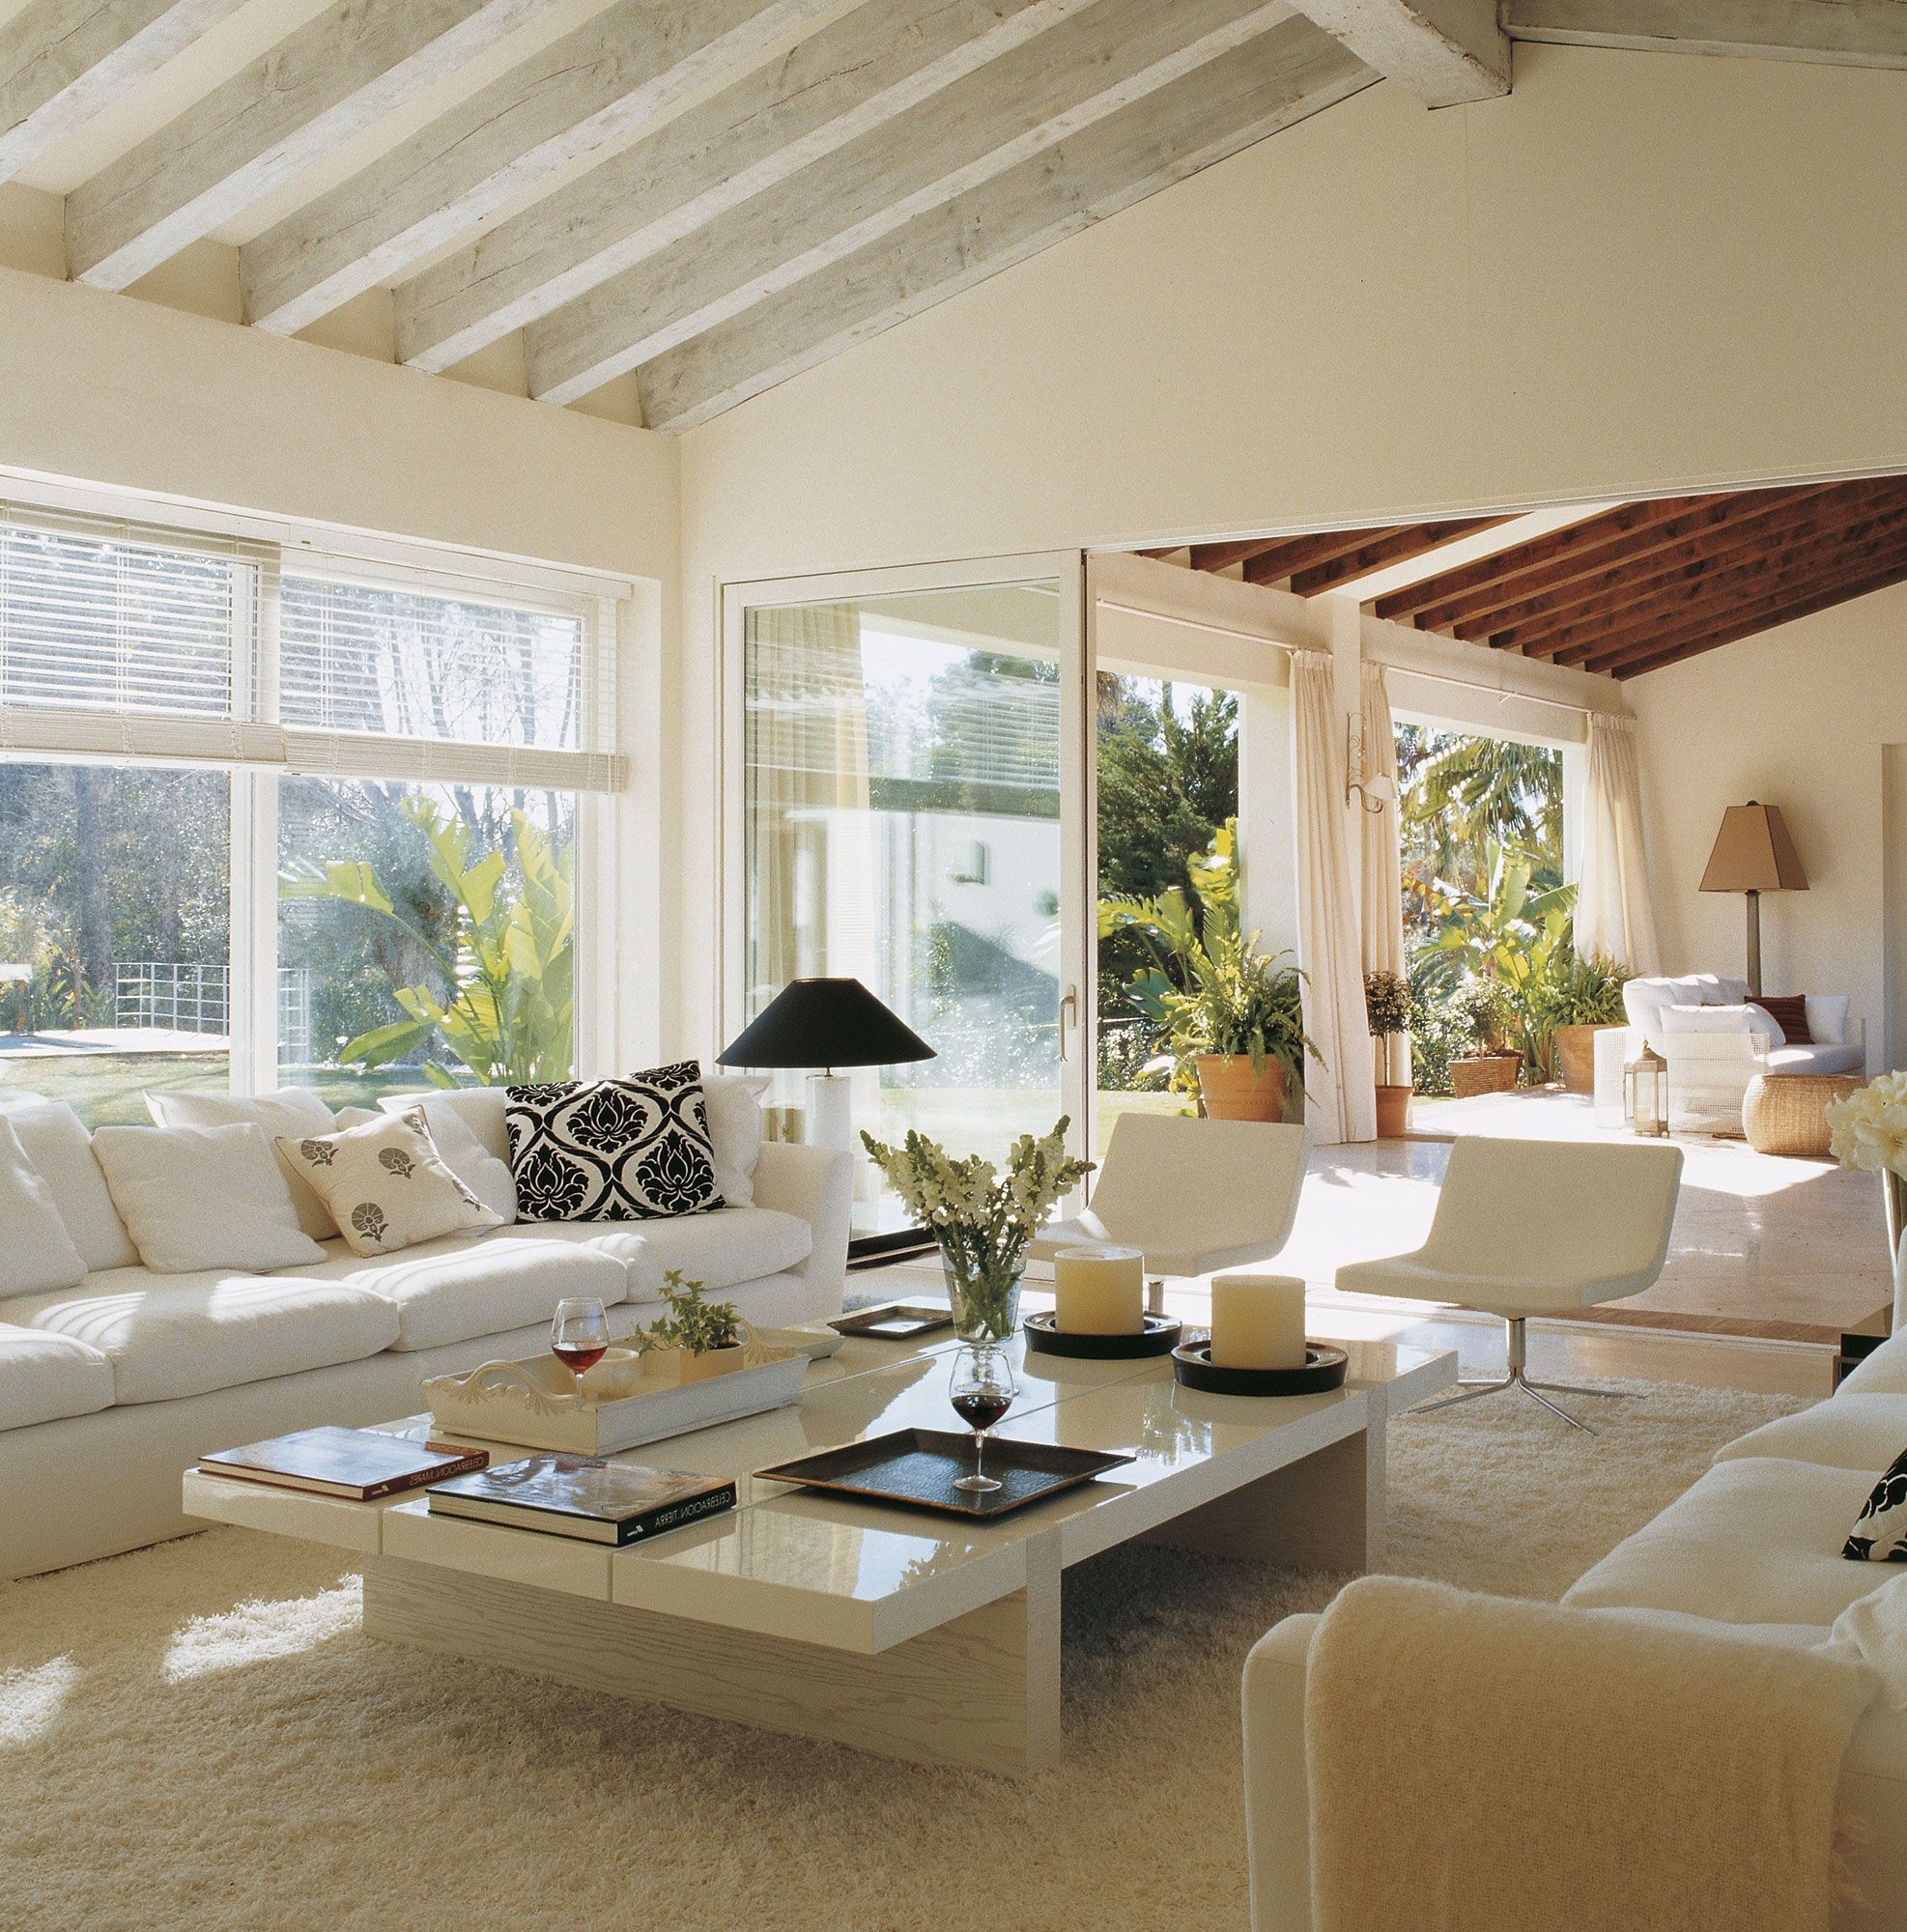 Salón moderno con sofás y muebles blancos abierto al porche.